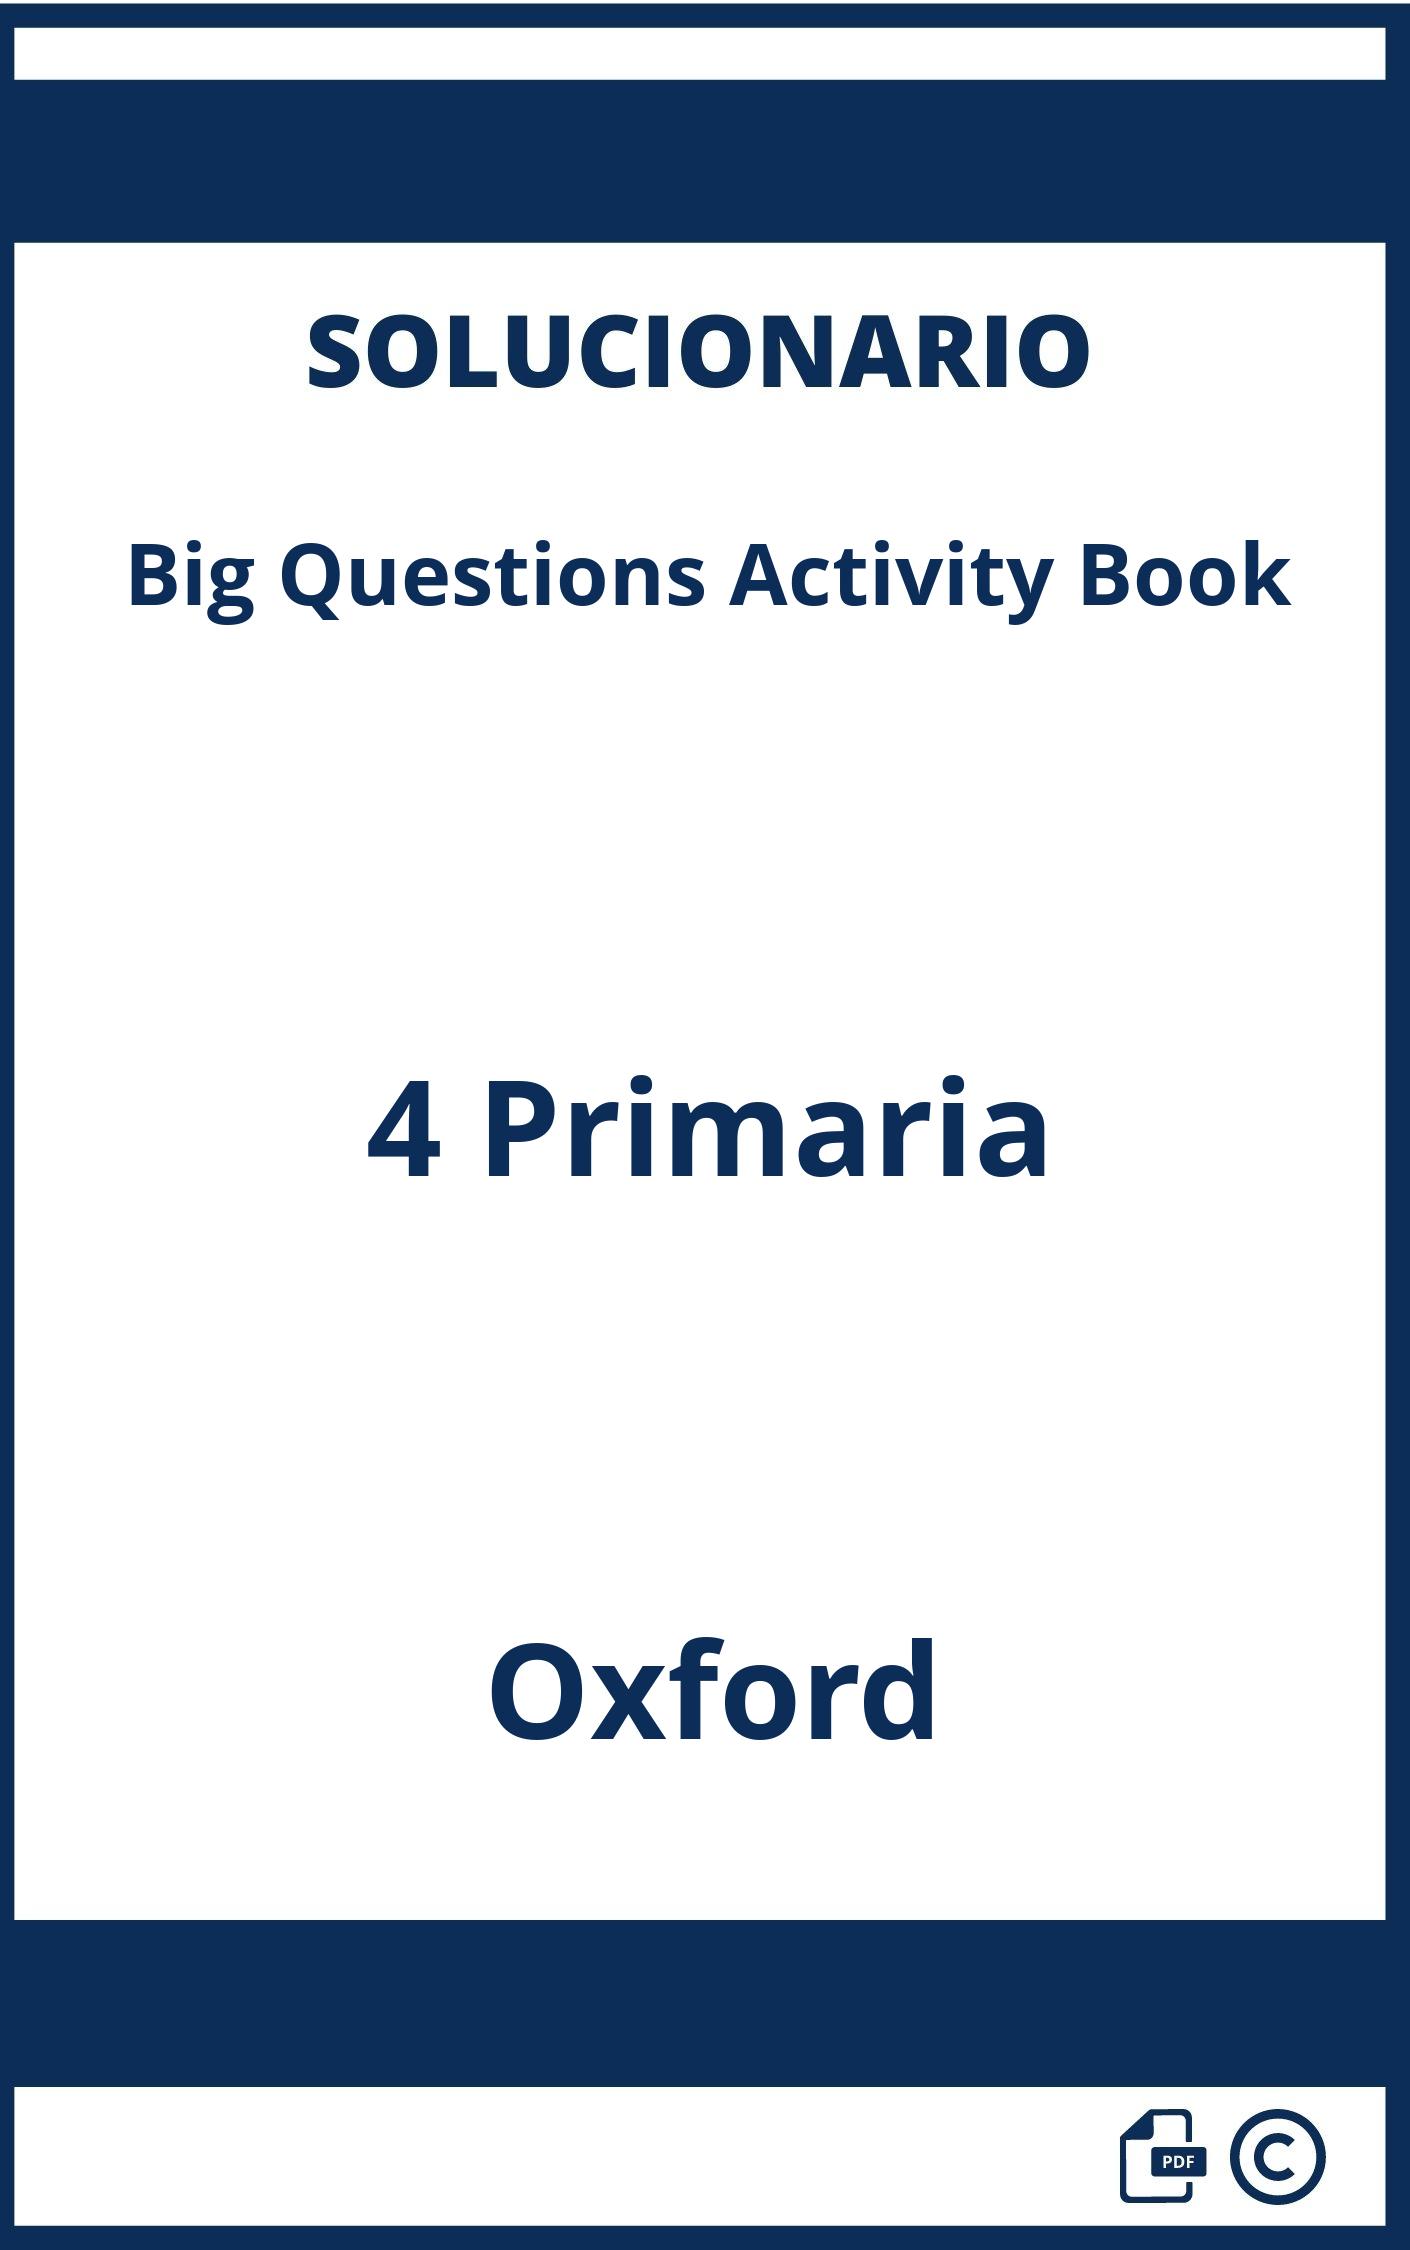 Solucionario Big Questions Activity Book 4 Primaria Oxford